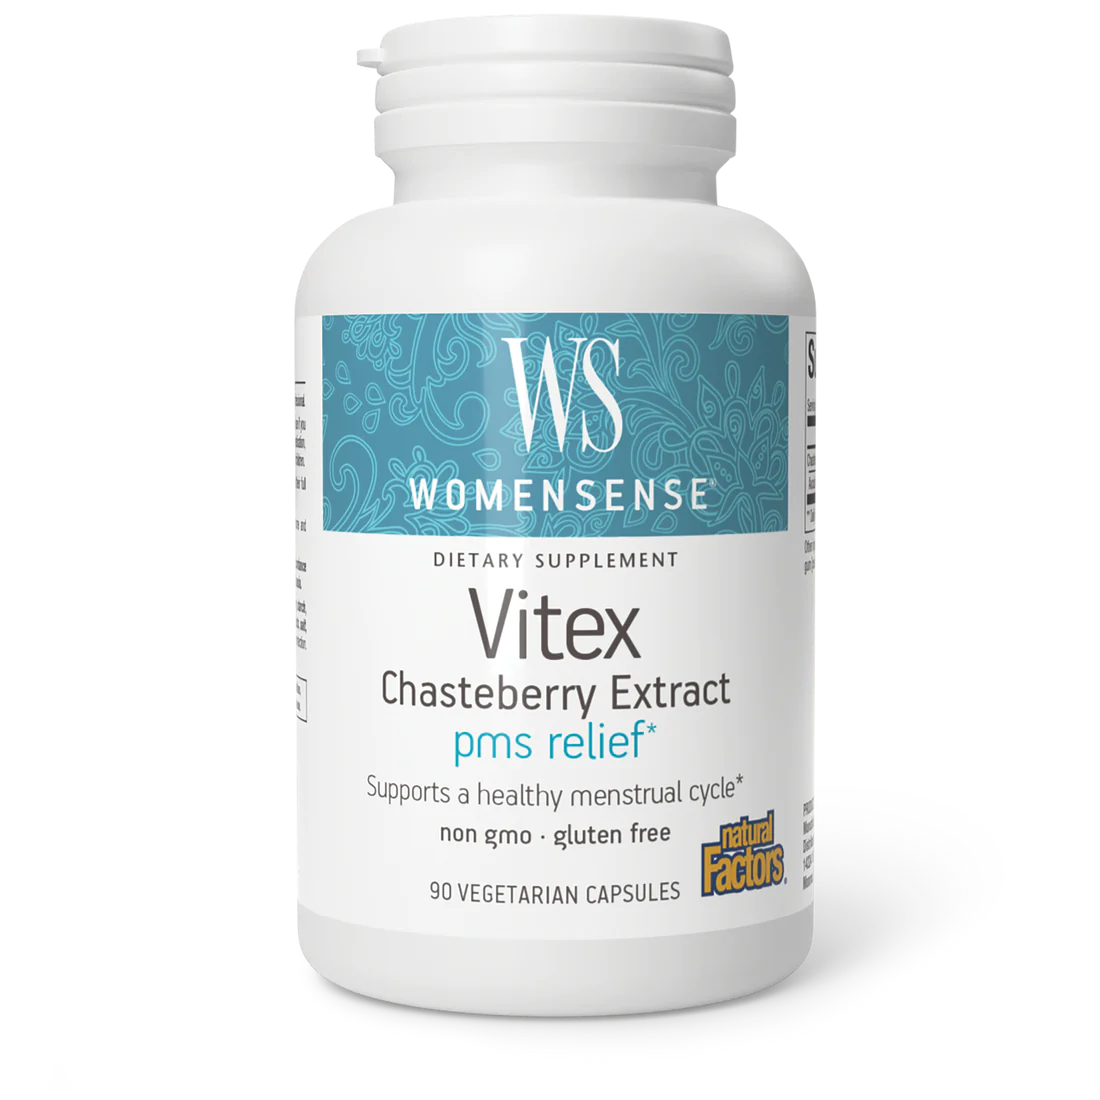 Vitex Chasteberry Extract